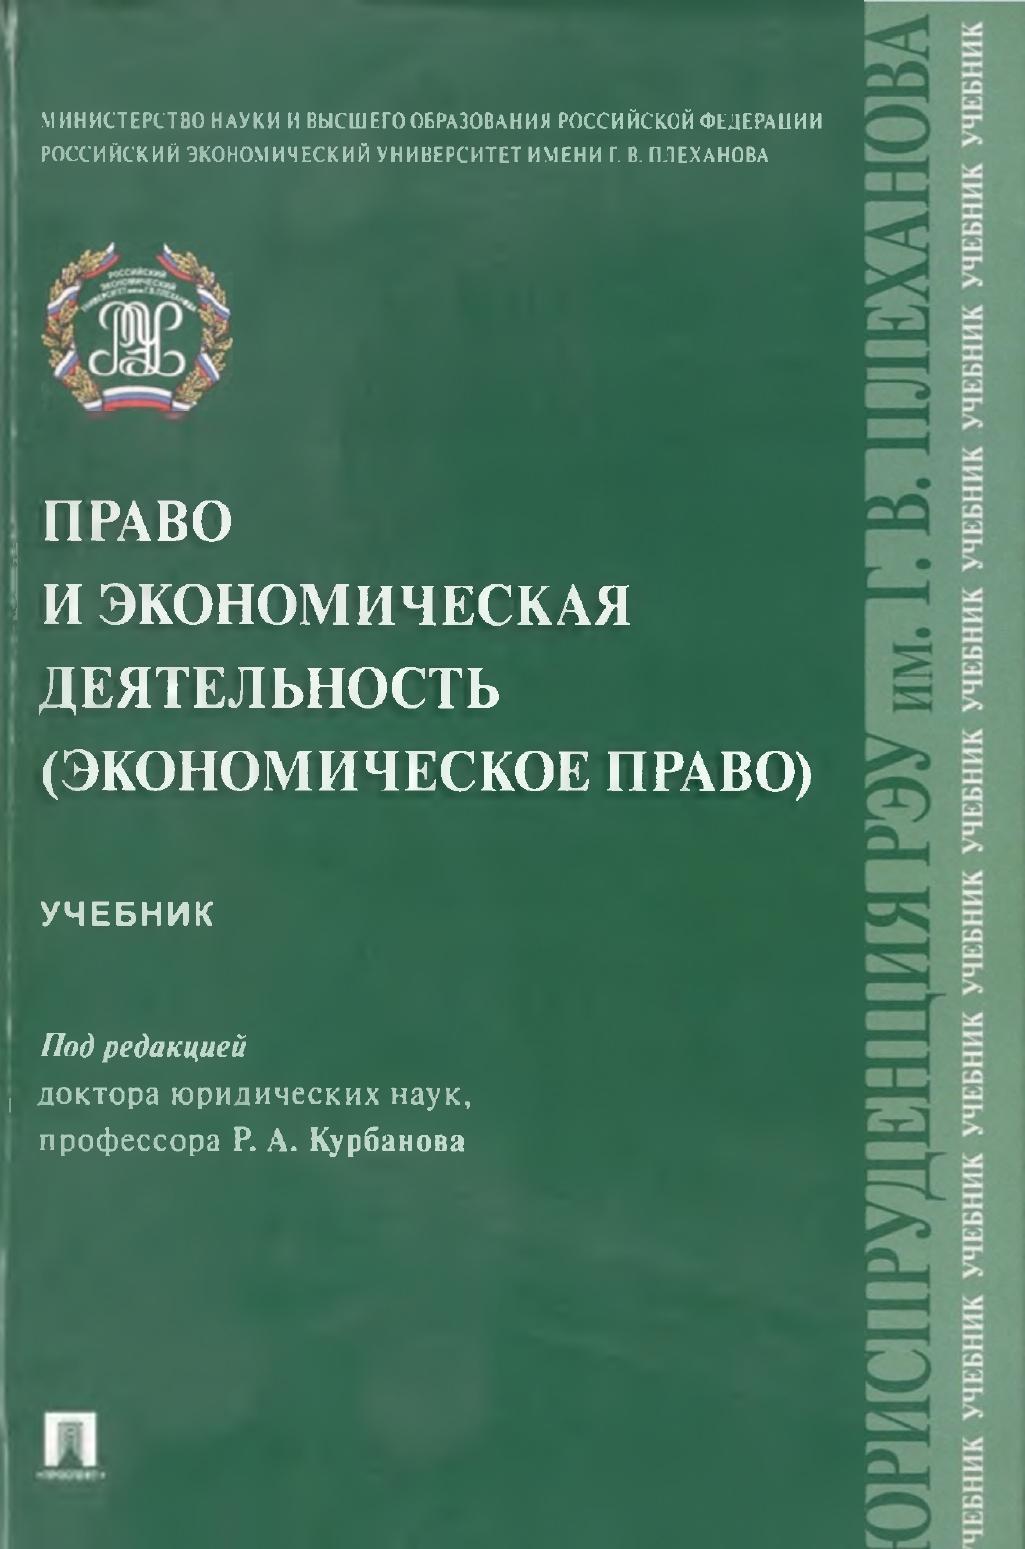 Вышел учебник «Право и экономическая деятельность (экономическое право)» под редакцией Р.А. Курбанова